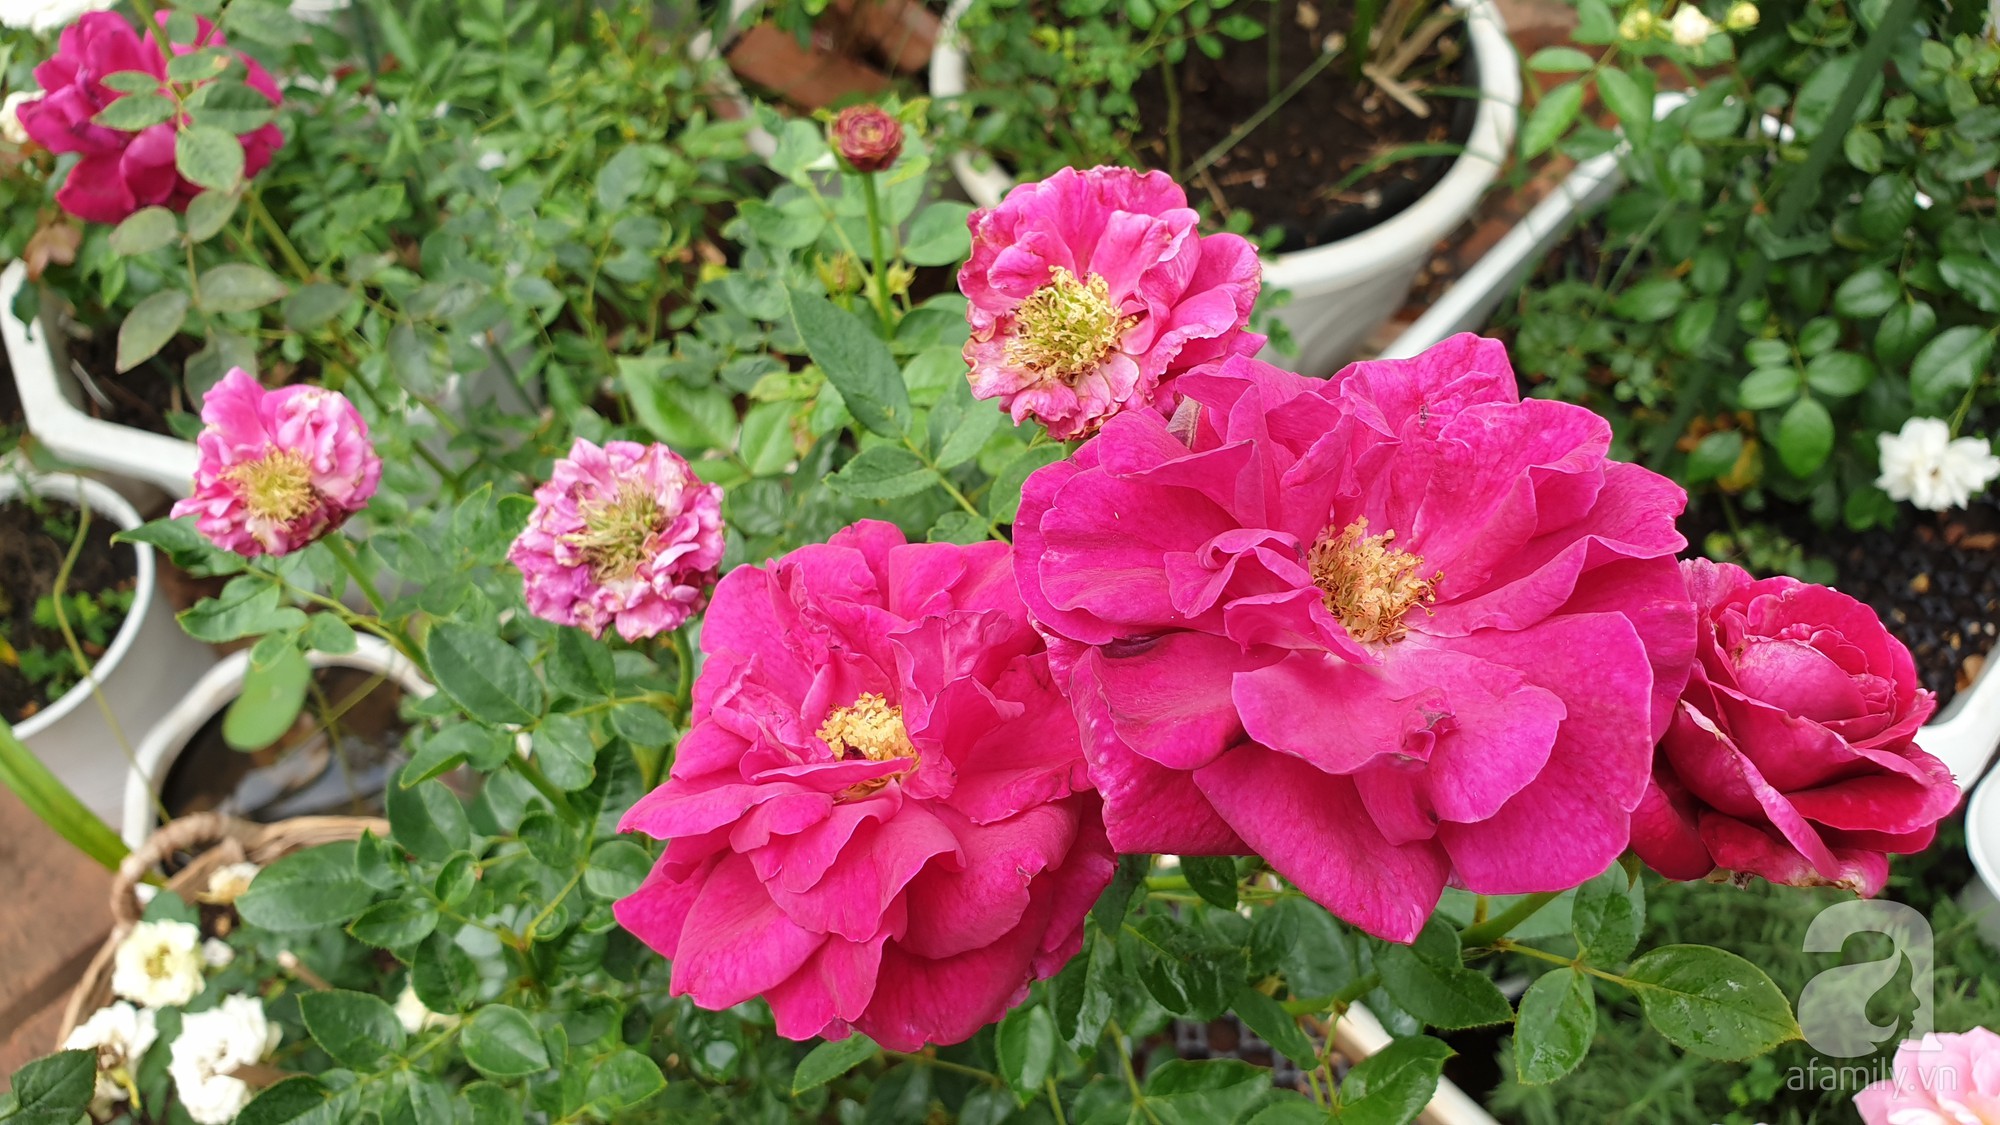 Vườn hồng trên sân thượng rực rỡ sắc màu của chàng trai 8x siêu đảm ở Sài Gòn - Ảnh 18.